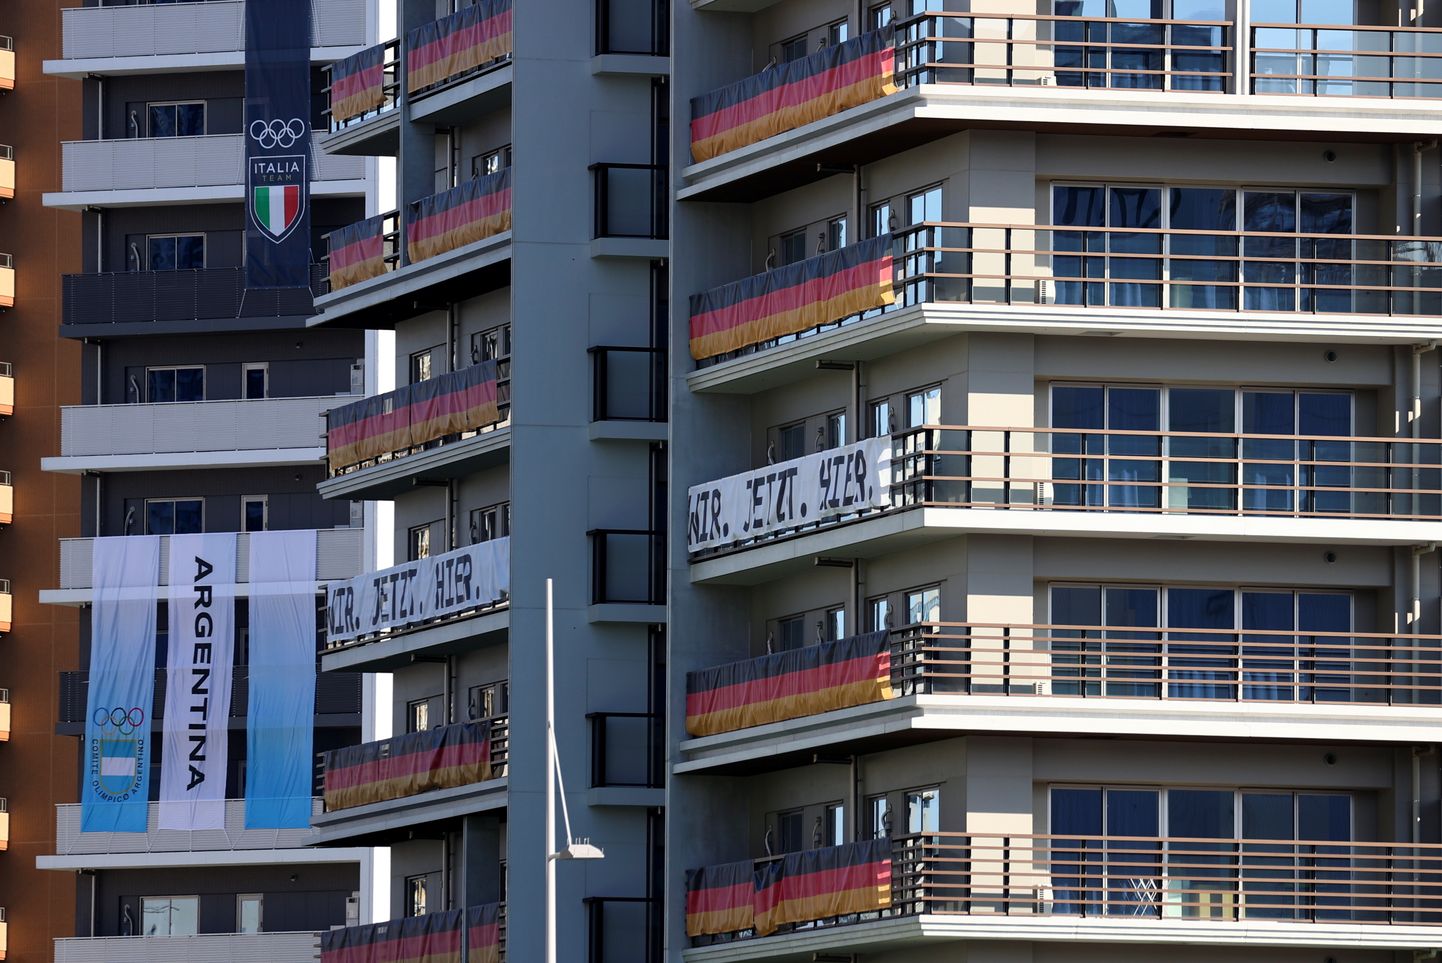 Олимпийская деревня отмечает расположение участников на балконах национальными флагами.